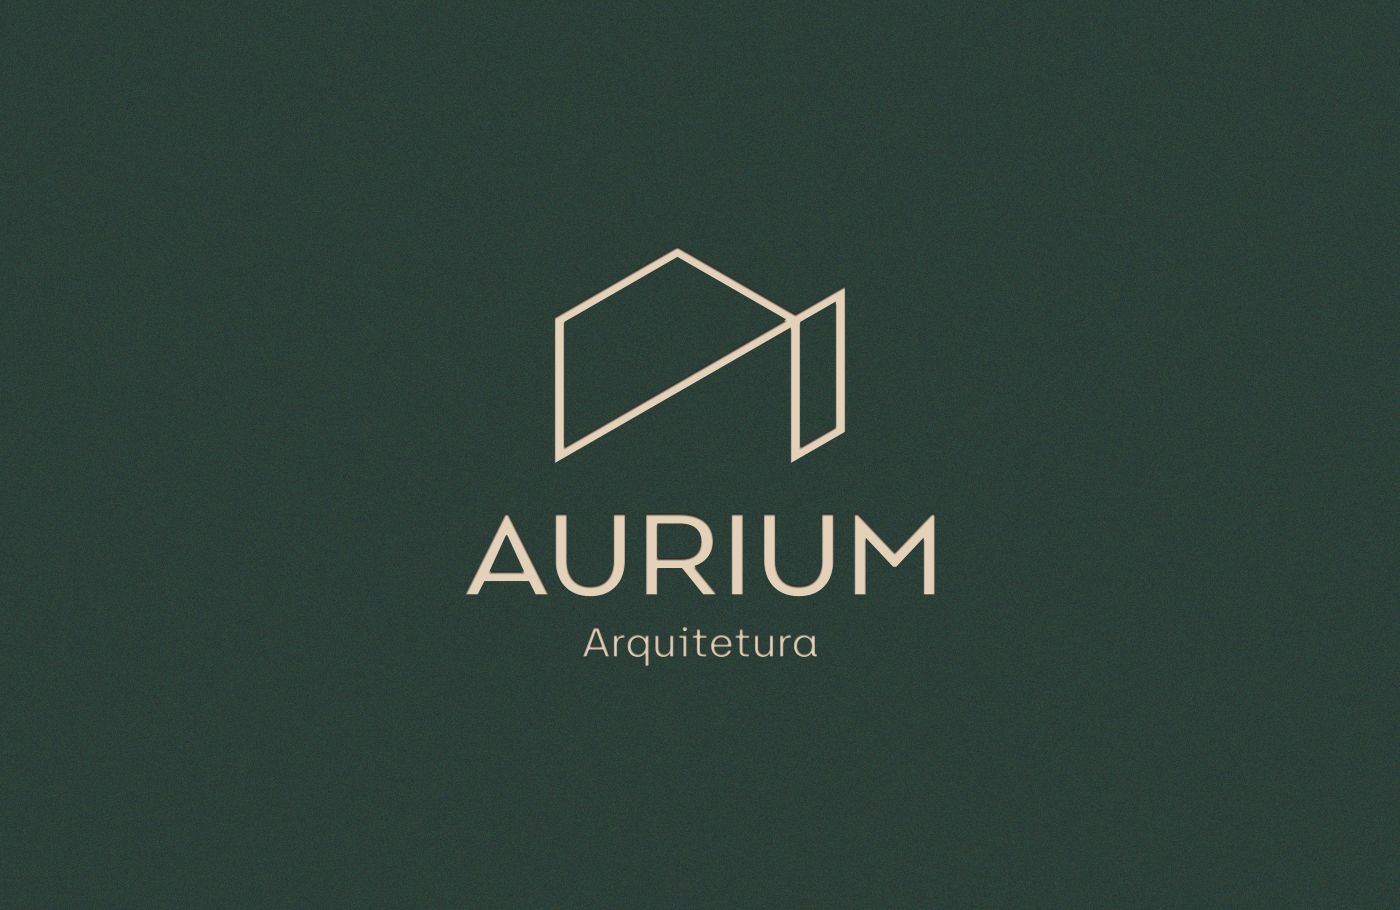 Aurium logo_green